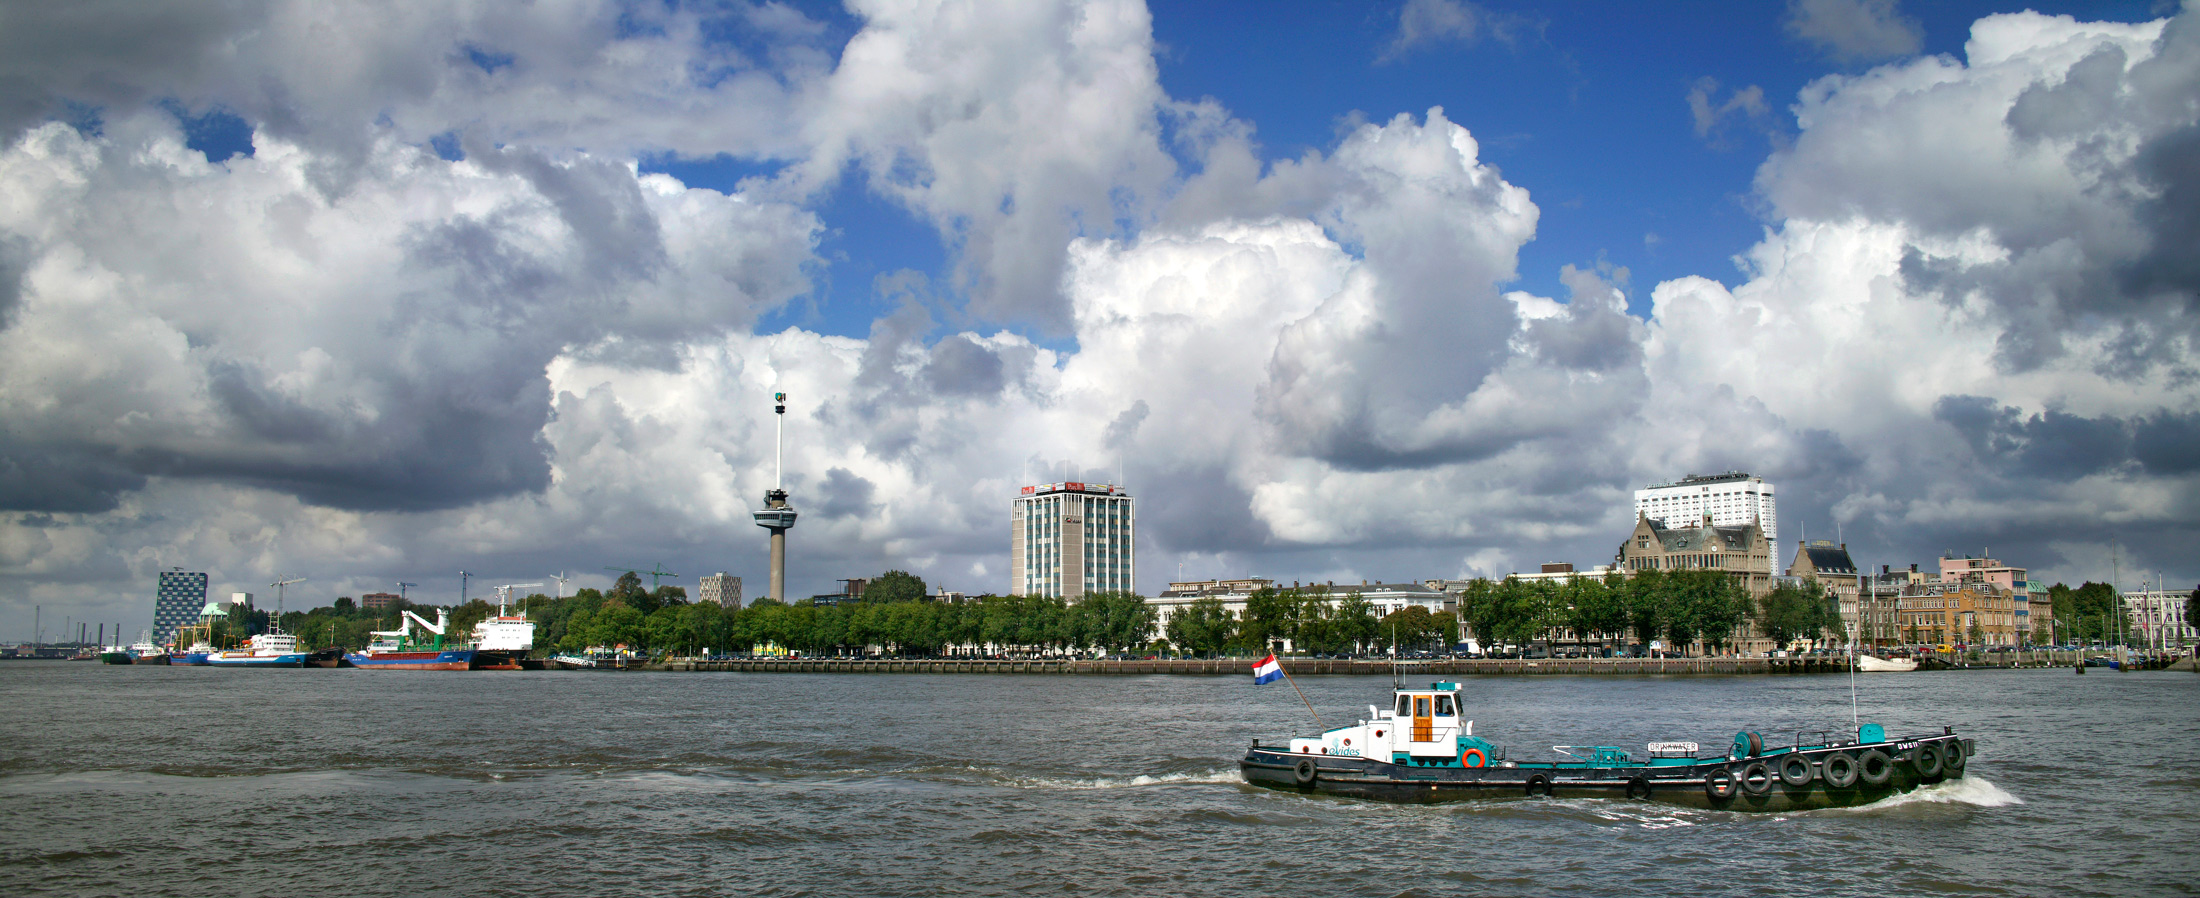 Rotterdam-2-.jpg